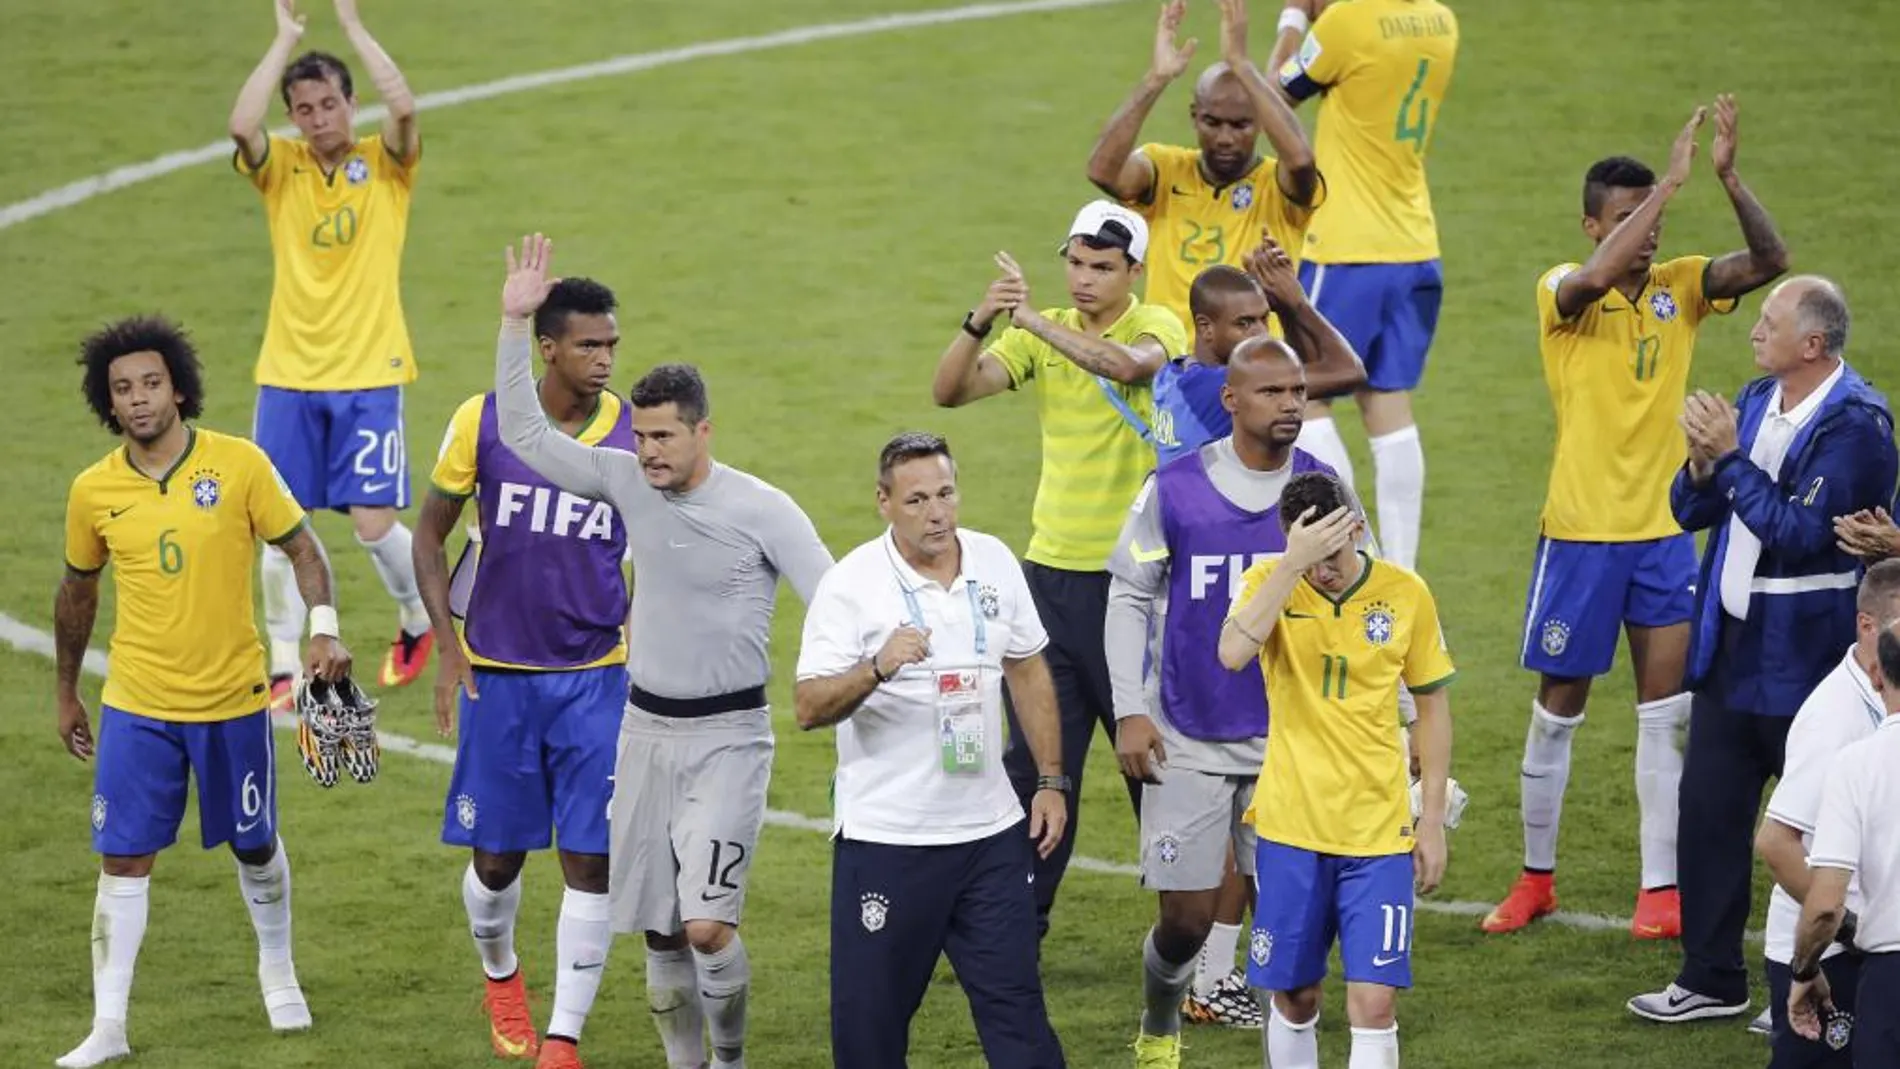 Los jugadores brasileños tras caer derrotados ante Alemania por 1-7 en el partido Brasil-Alemania